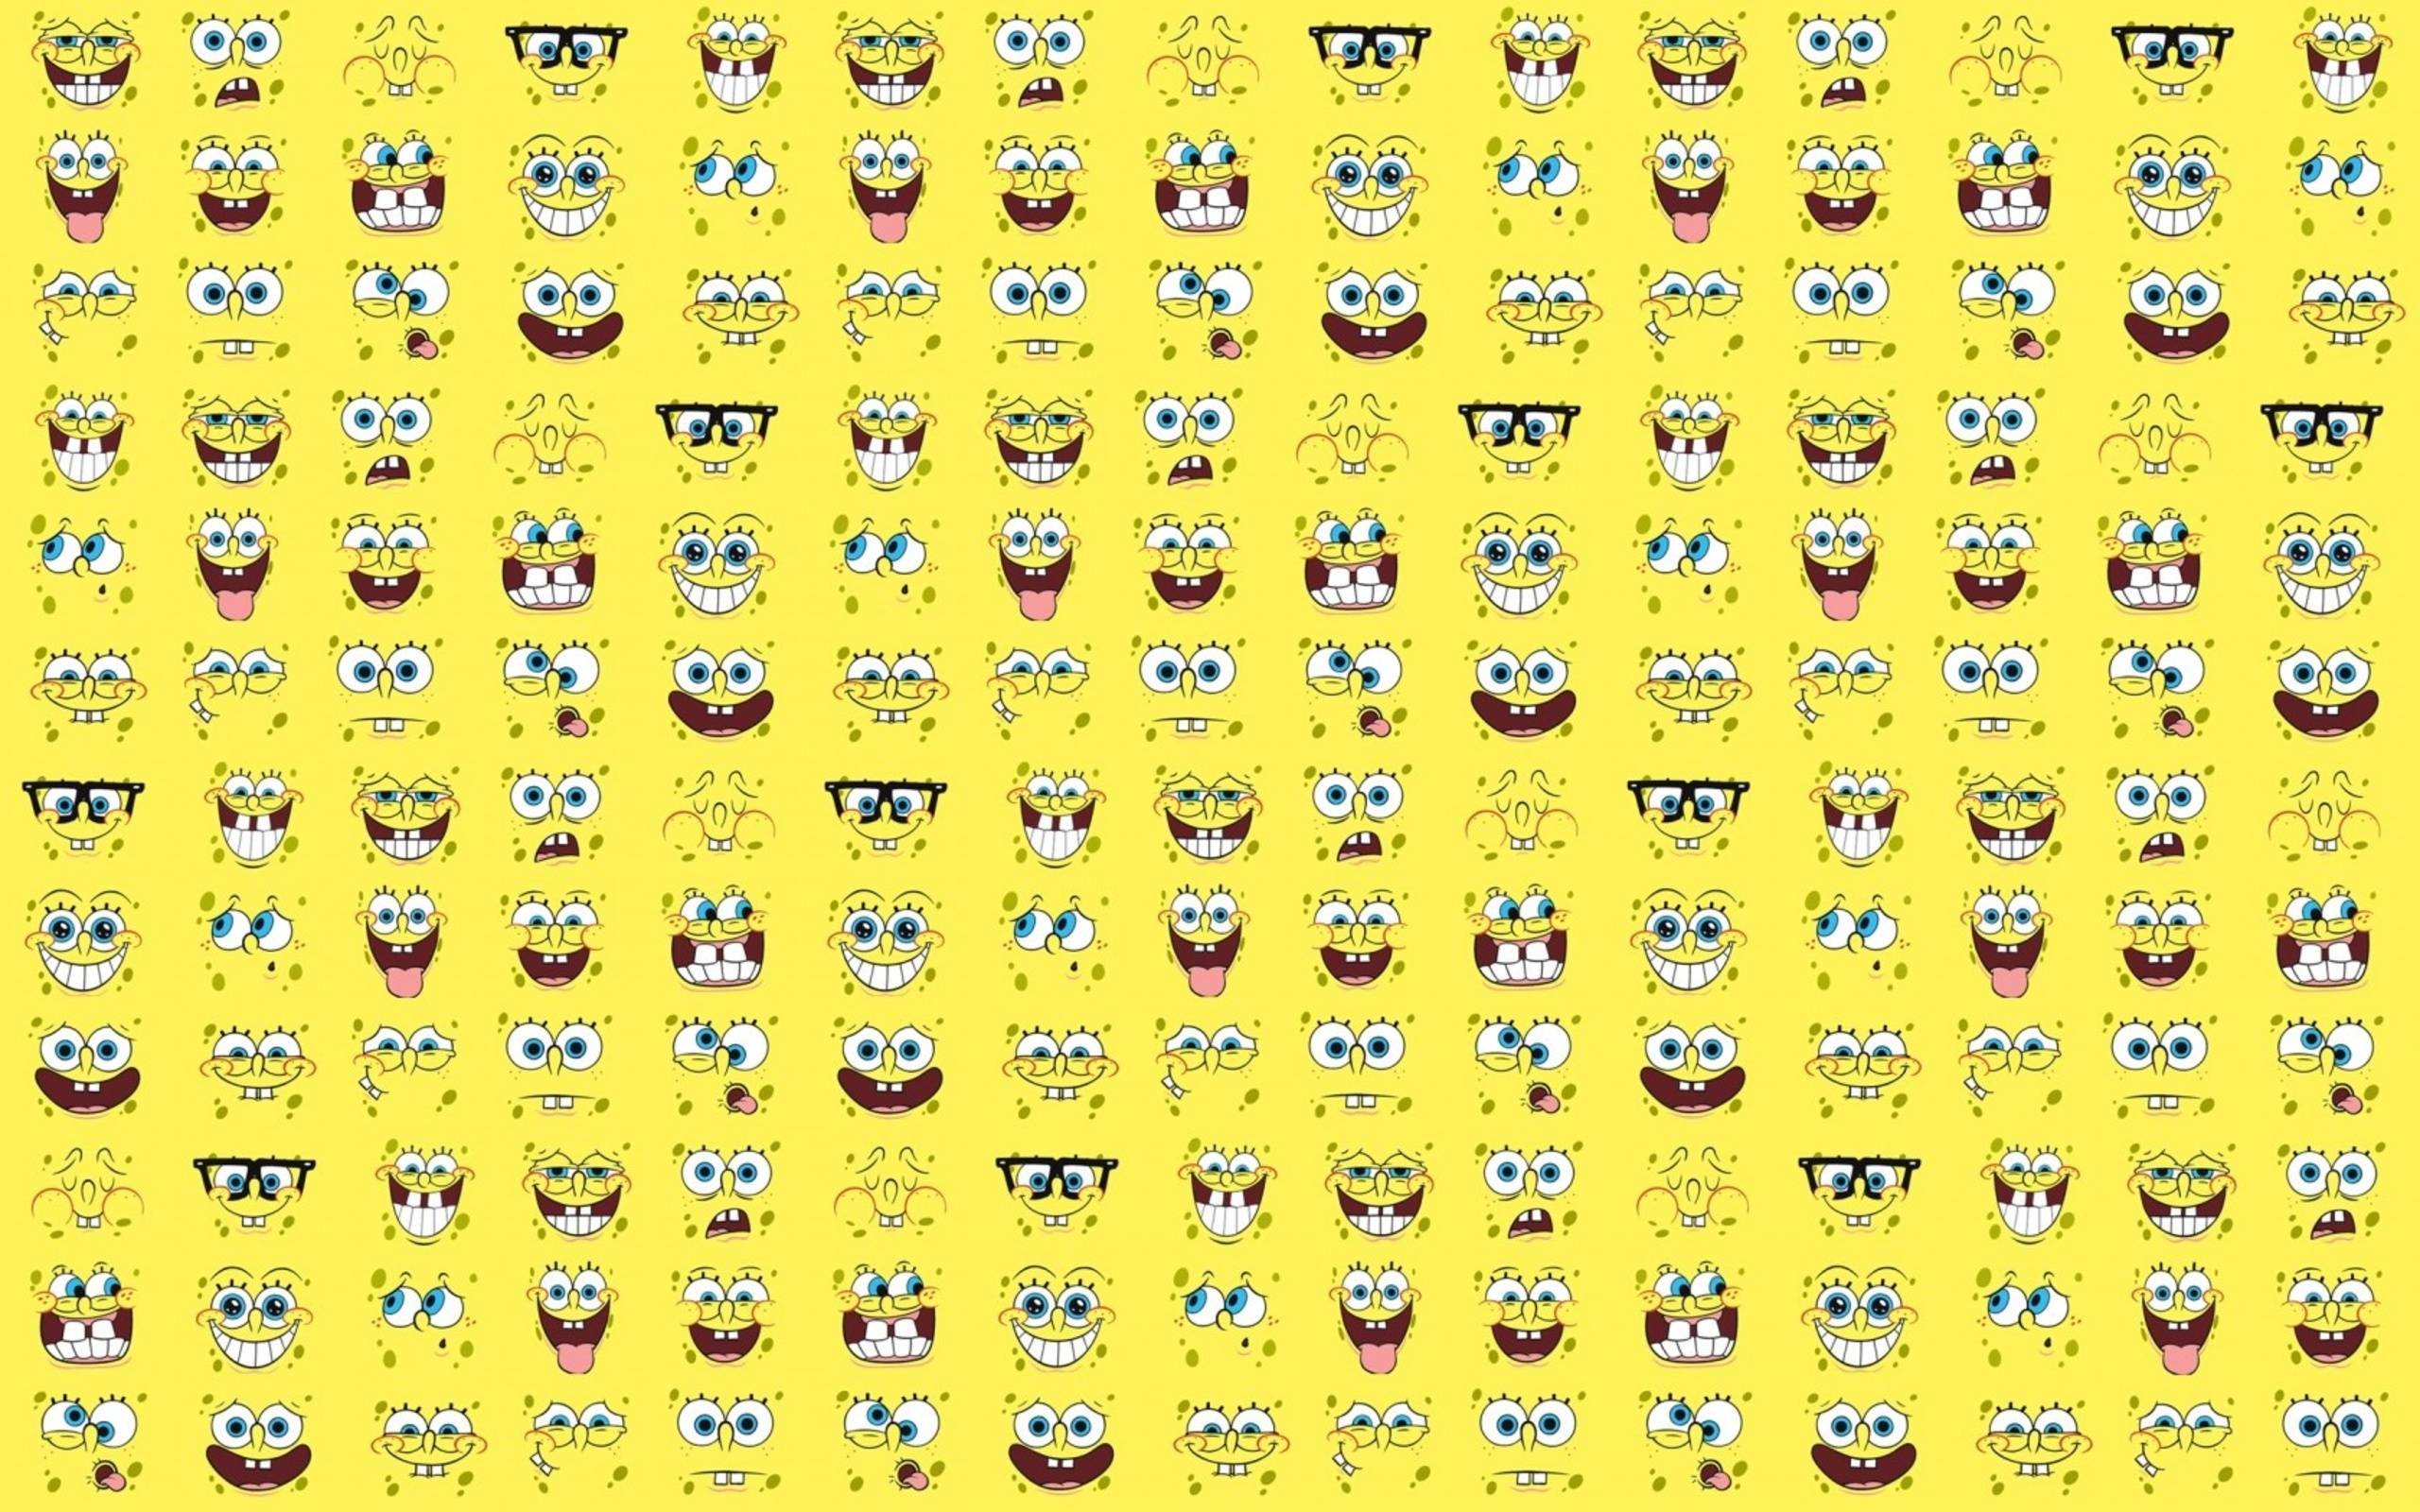 Spongebob Squarepants Faces Wallpaper « wallpafar.com